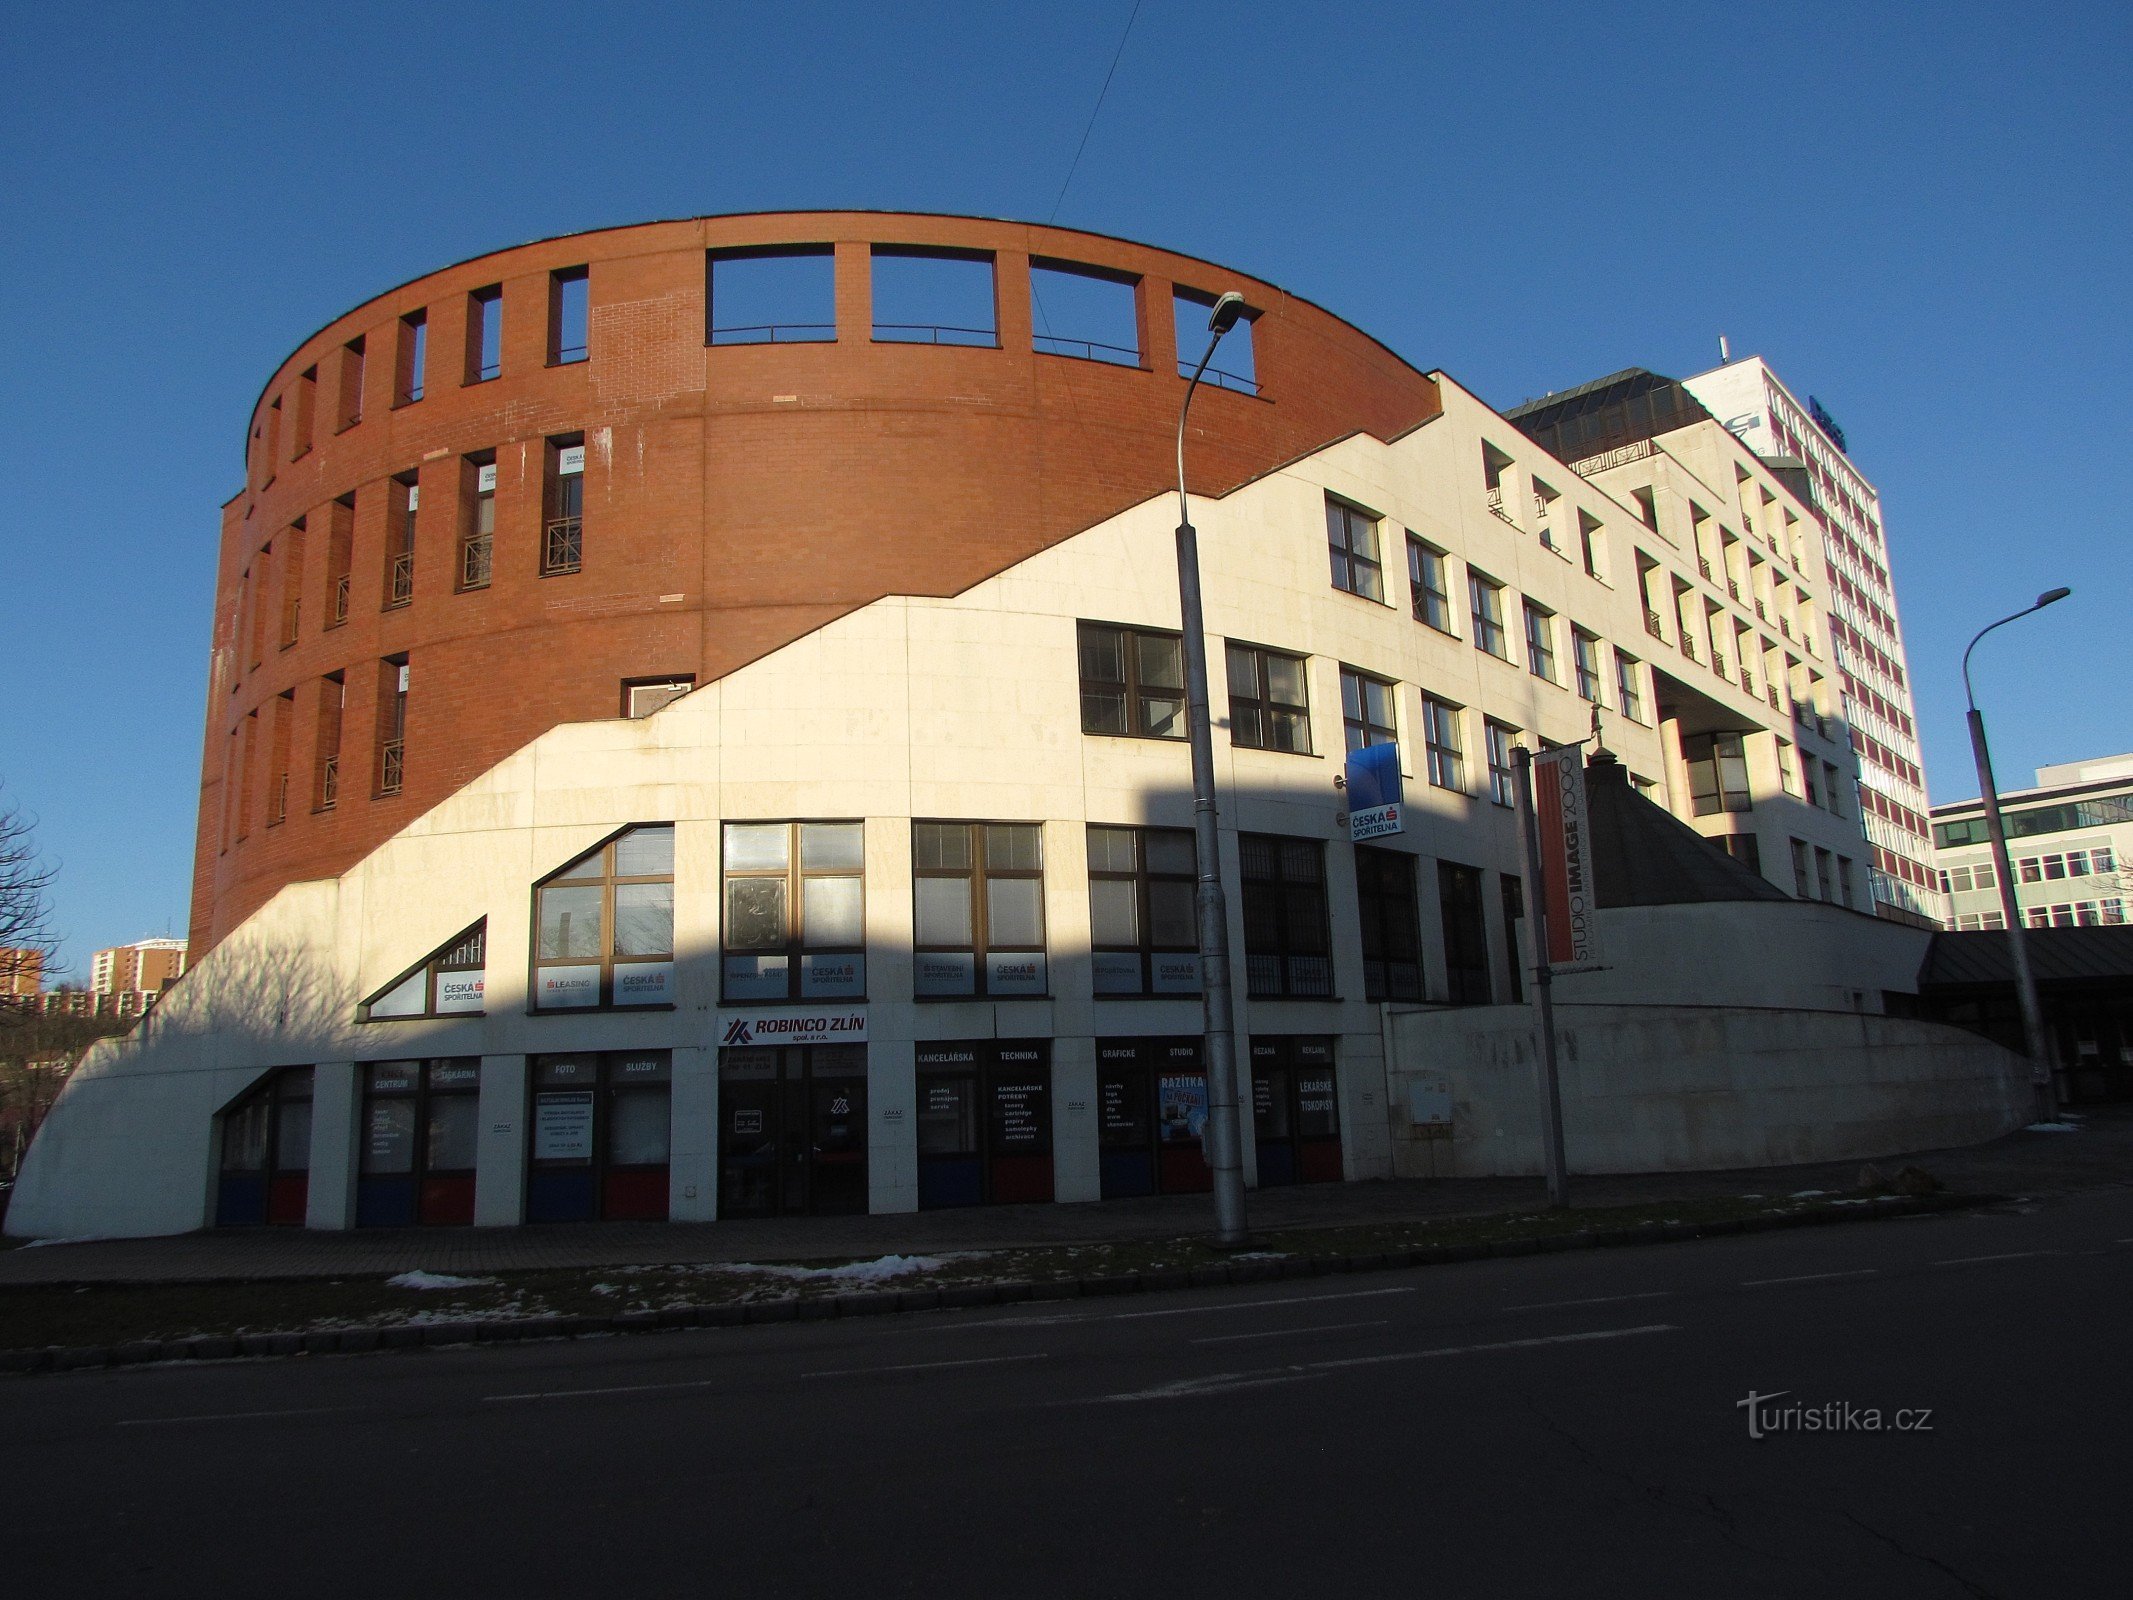 Zlín - House of Money-bygningen